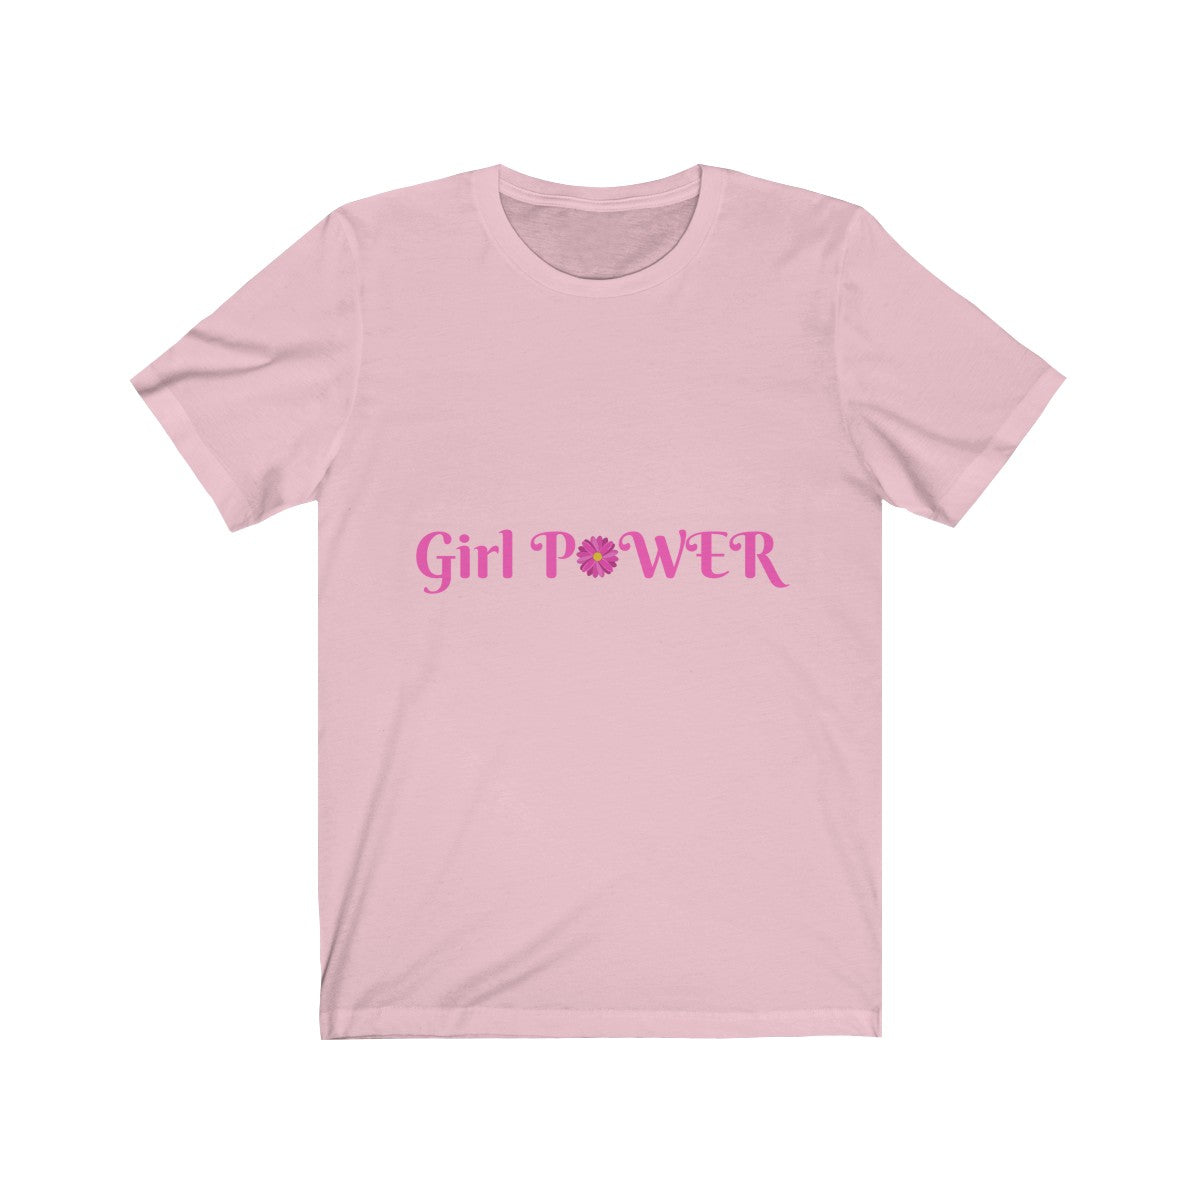 Girl Power Tee| Girl Power Tshirt